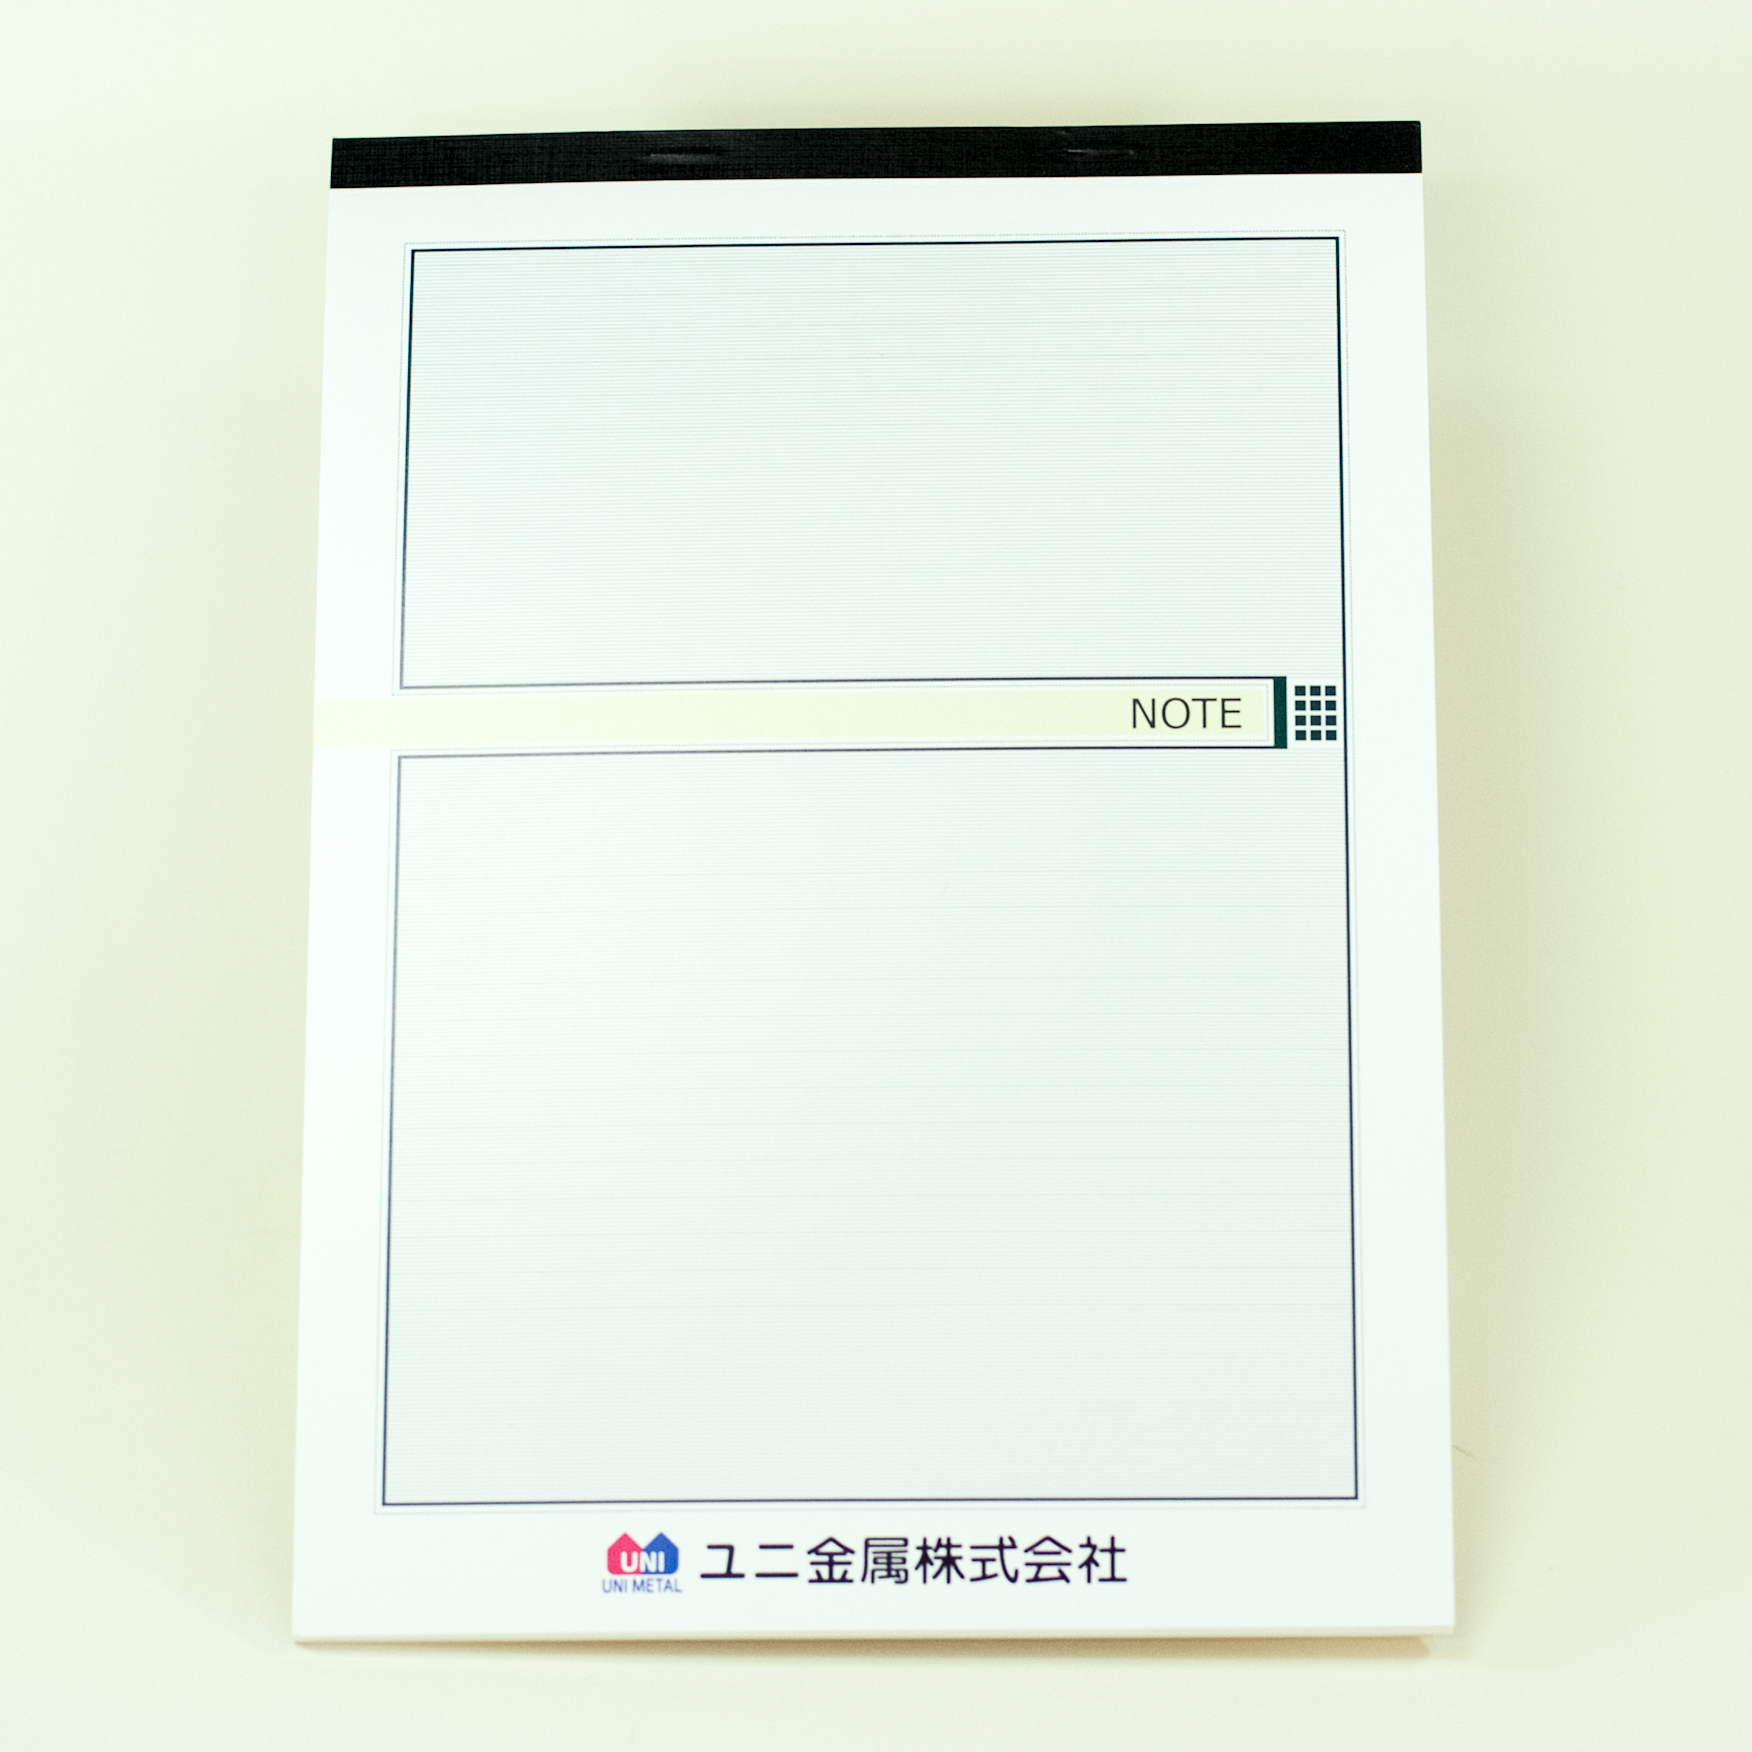 「ユニ金属株式会社 様」製作のオリジナルノート